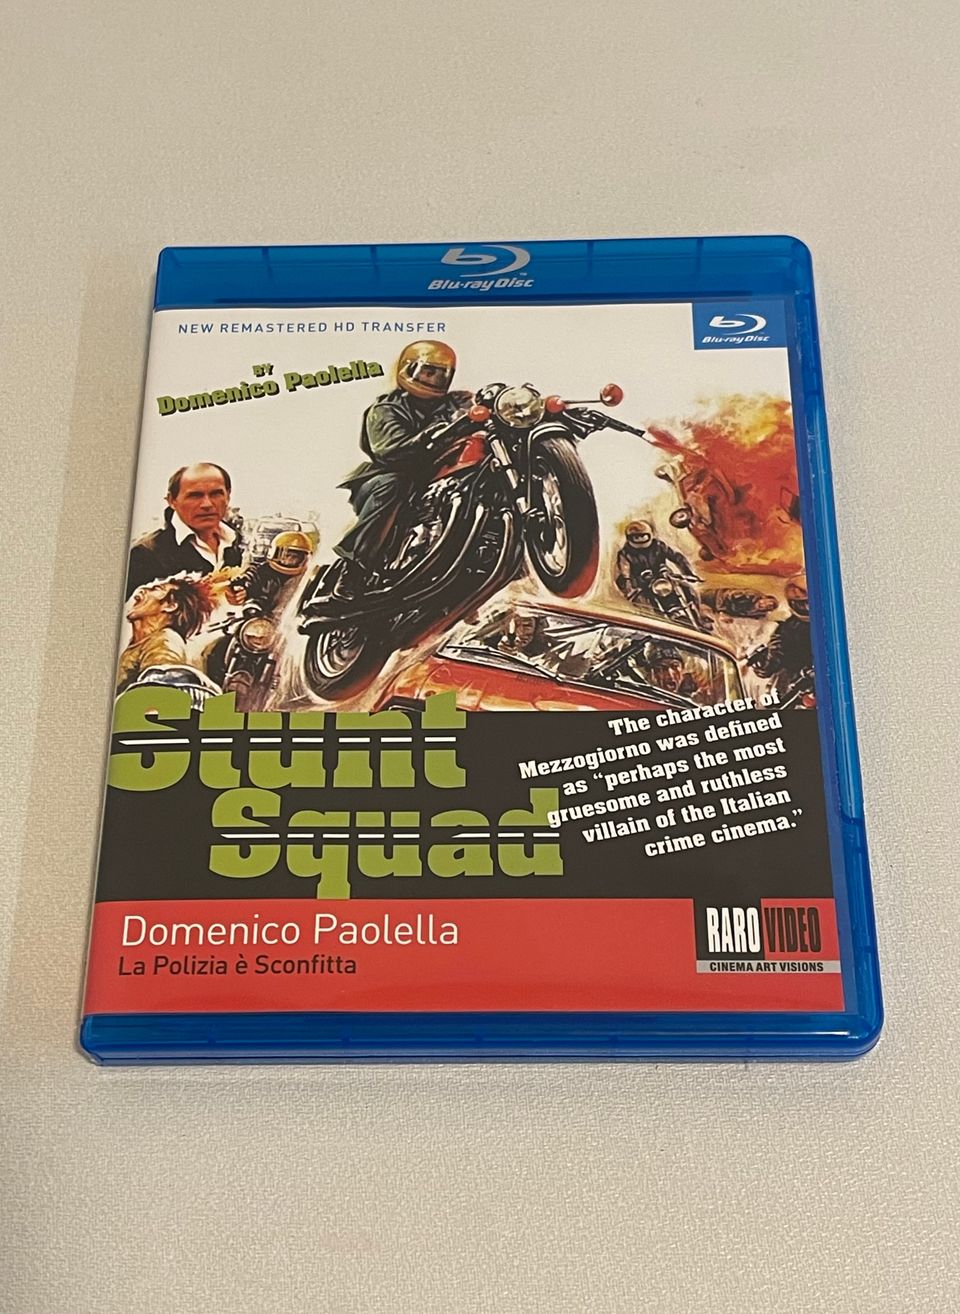 Stunt Squad (1977) Raro Blu-ray